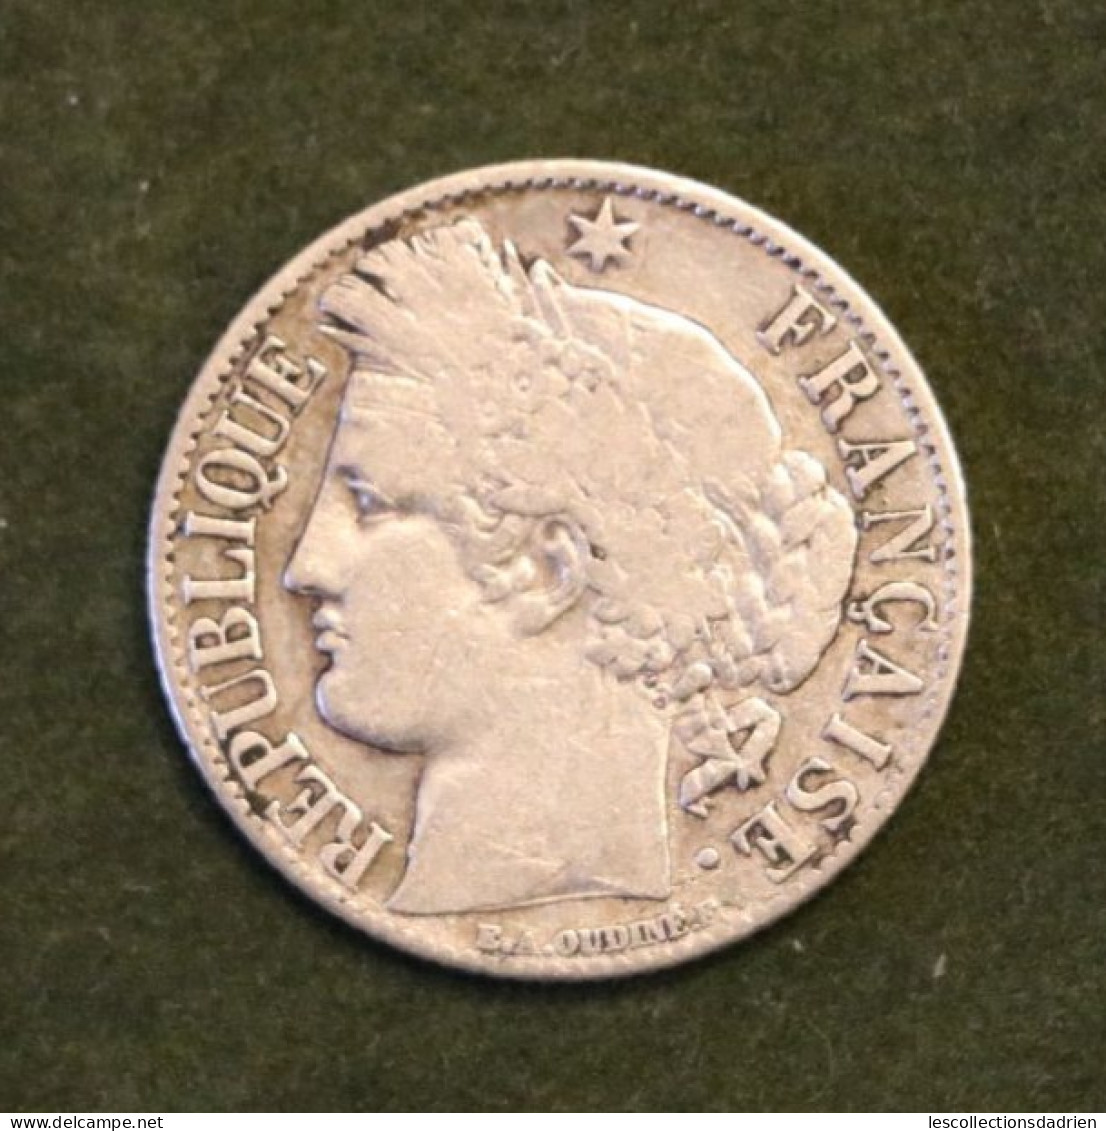 Pièce En Argent Française 1 Franc 1895  - French Silver Coin - 1 Franc